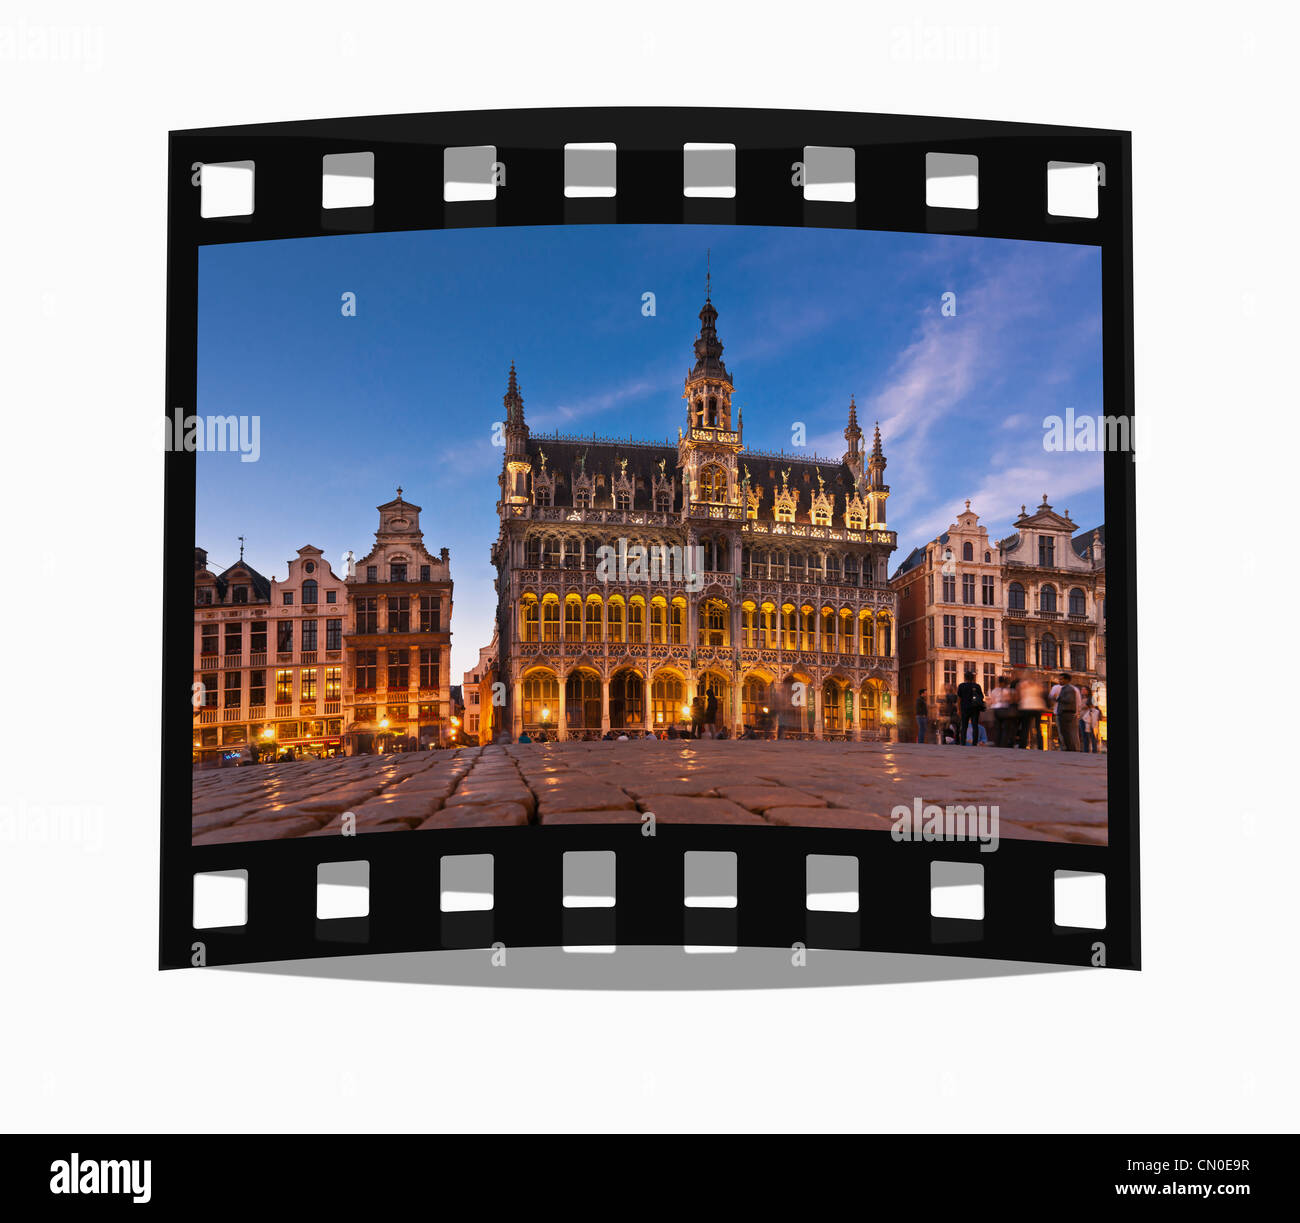 Film fixe : Grand Place, la place du marché avec des maisons de guilde baroque et Kings House, Bruxelles, Belgique, Europe Banque D'Images